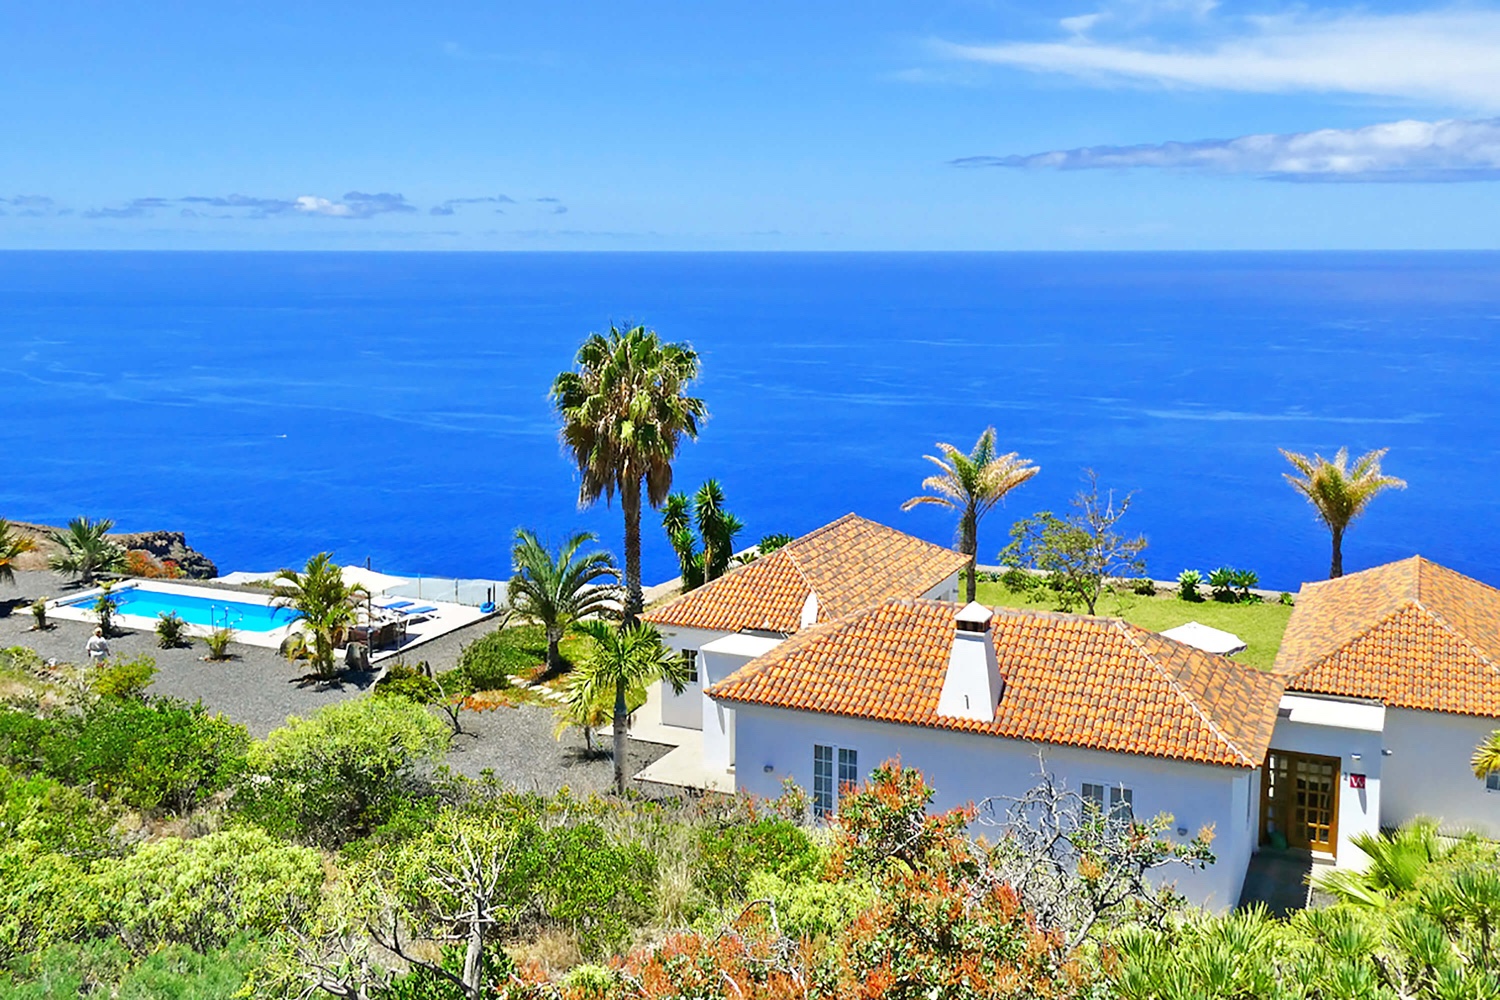 Bardzo ładny nowoczesny dom z prywatnym basenem i przepięknym panoramicznym widokiem na Ocean Atlantycki. Bardzo dobrze wyposażony dom wakacyjny jest idealny na wakacje na La Palmie ze wszystkimi wygodami.